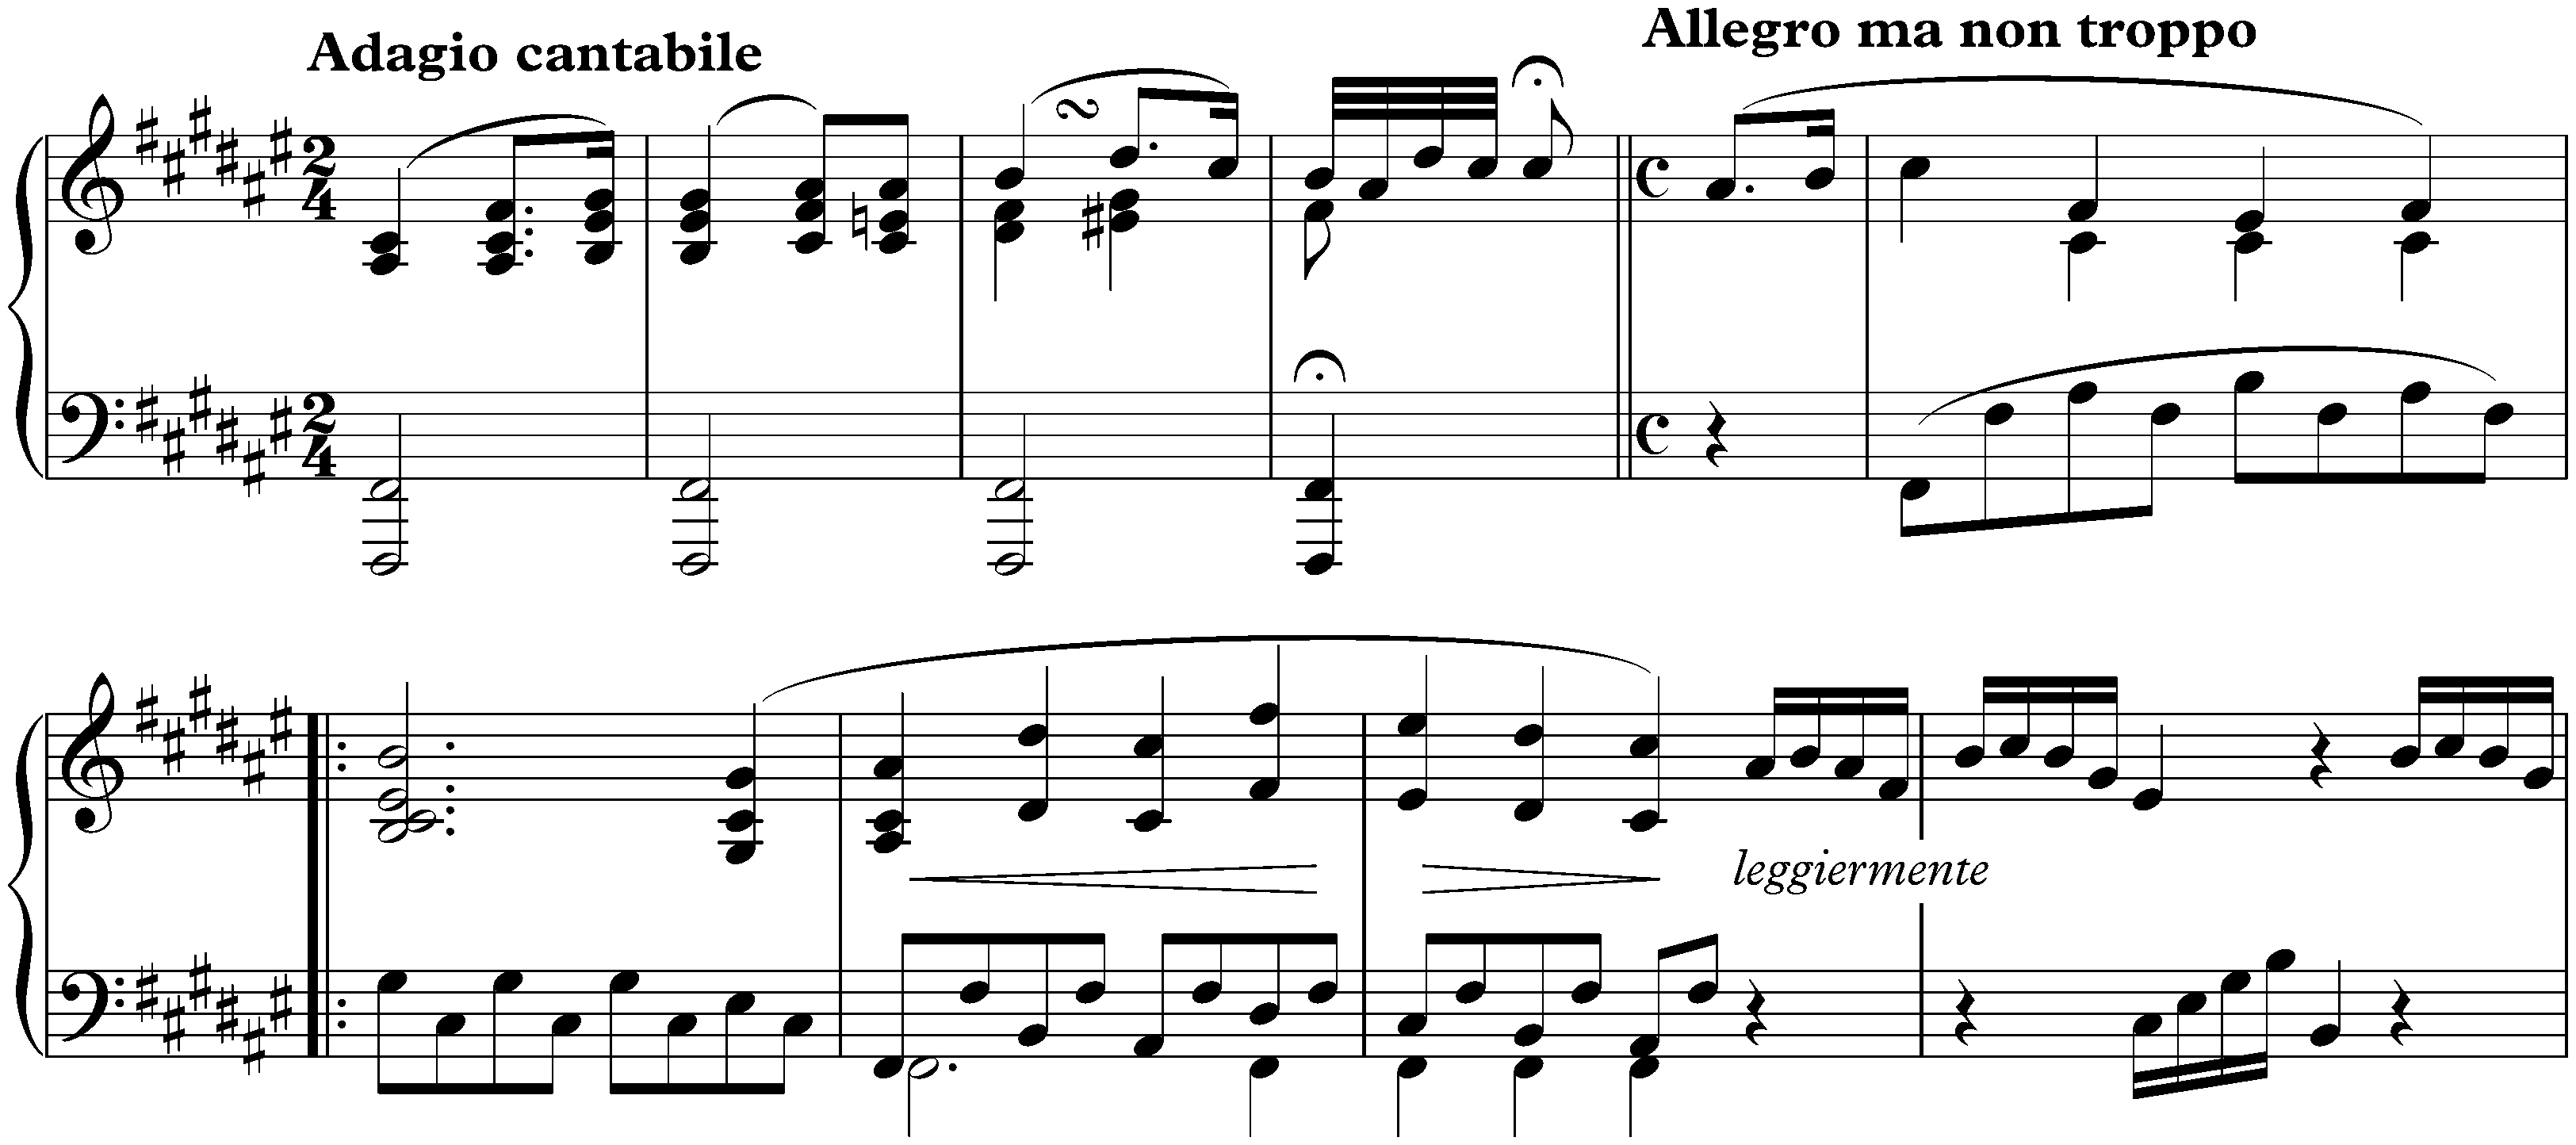 Sonata no. 24 in F-sharp major, op. 78; 1. Adagio cantabile – Allegro ma non troppo